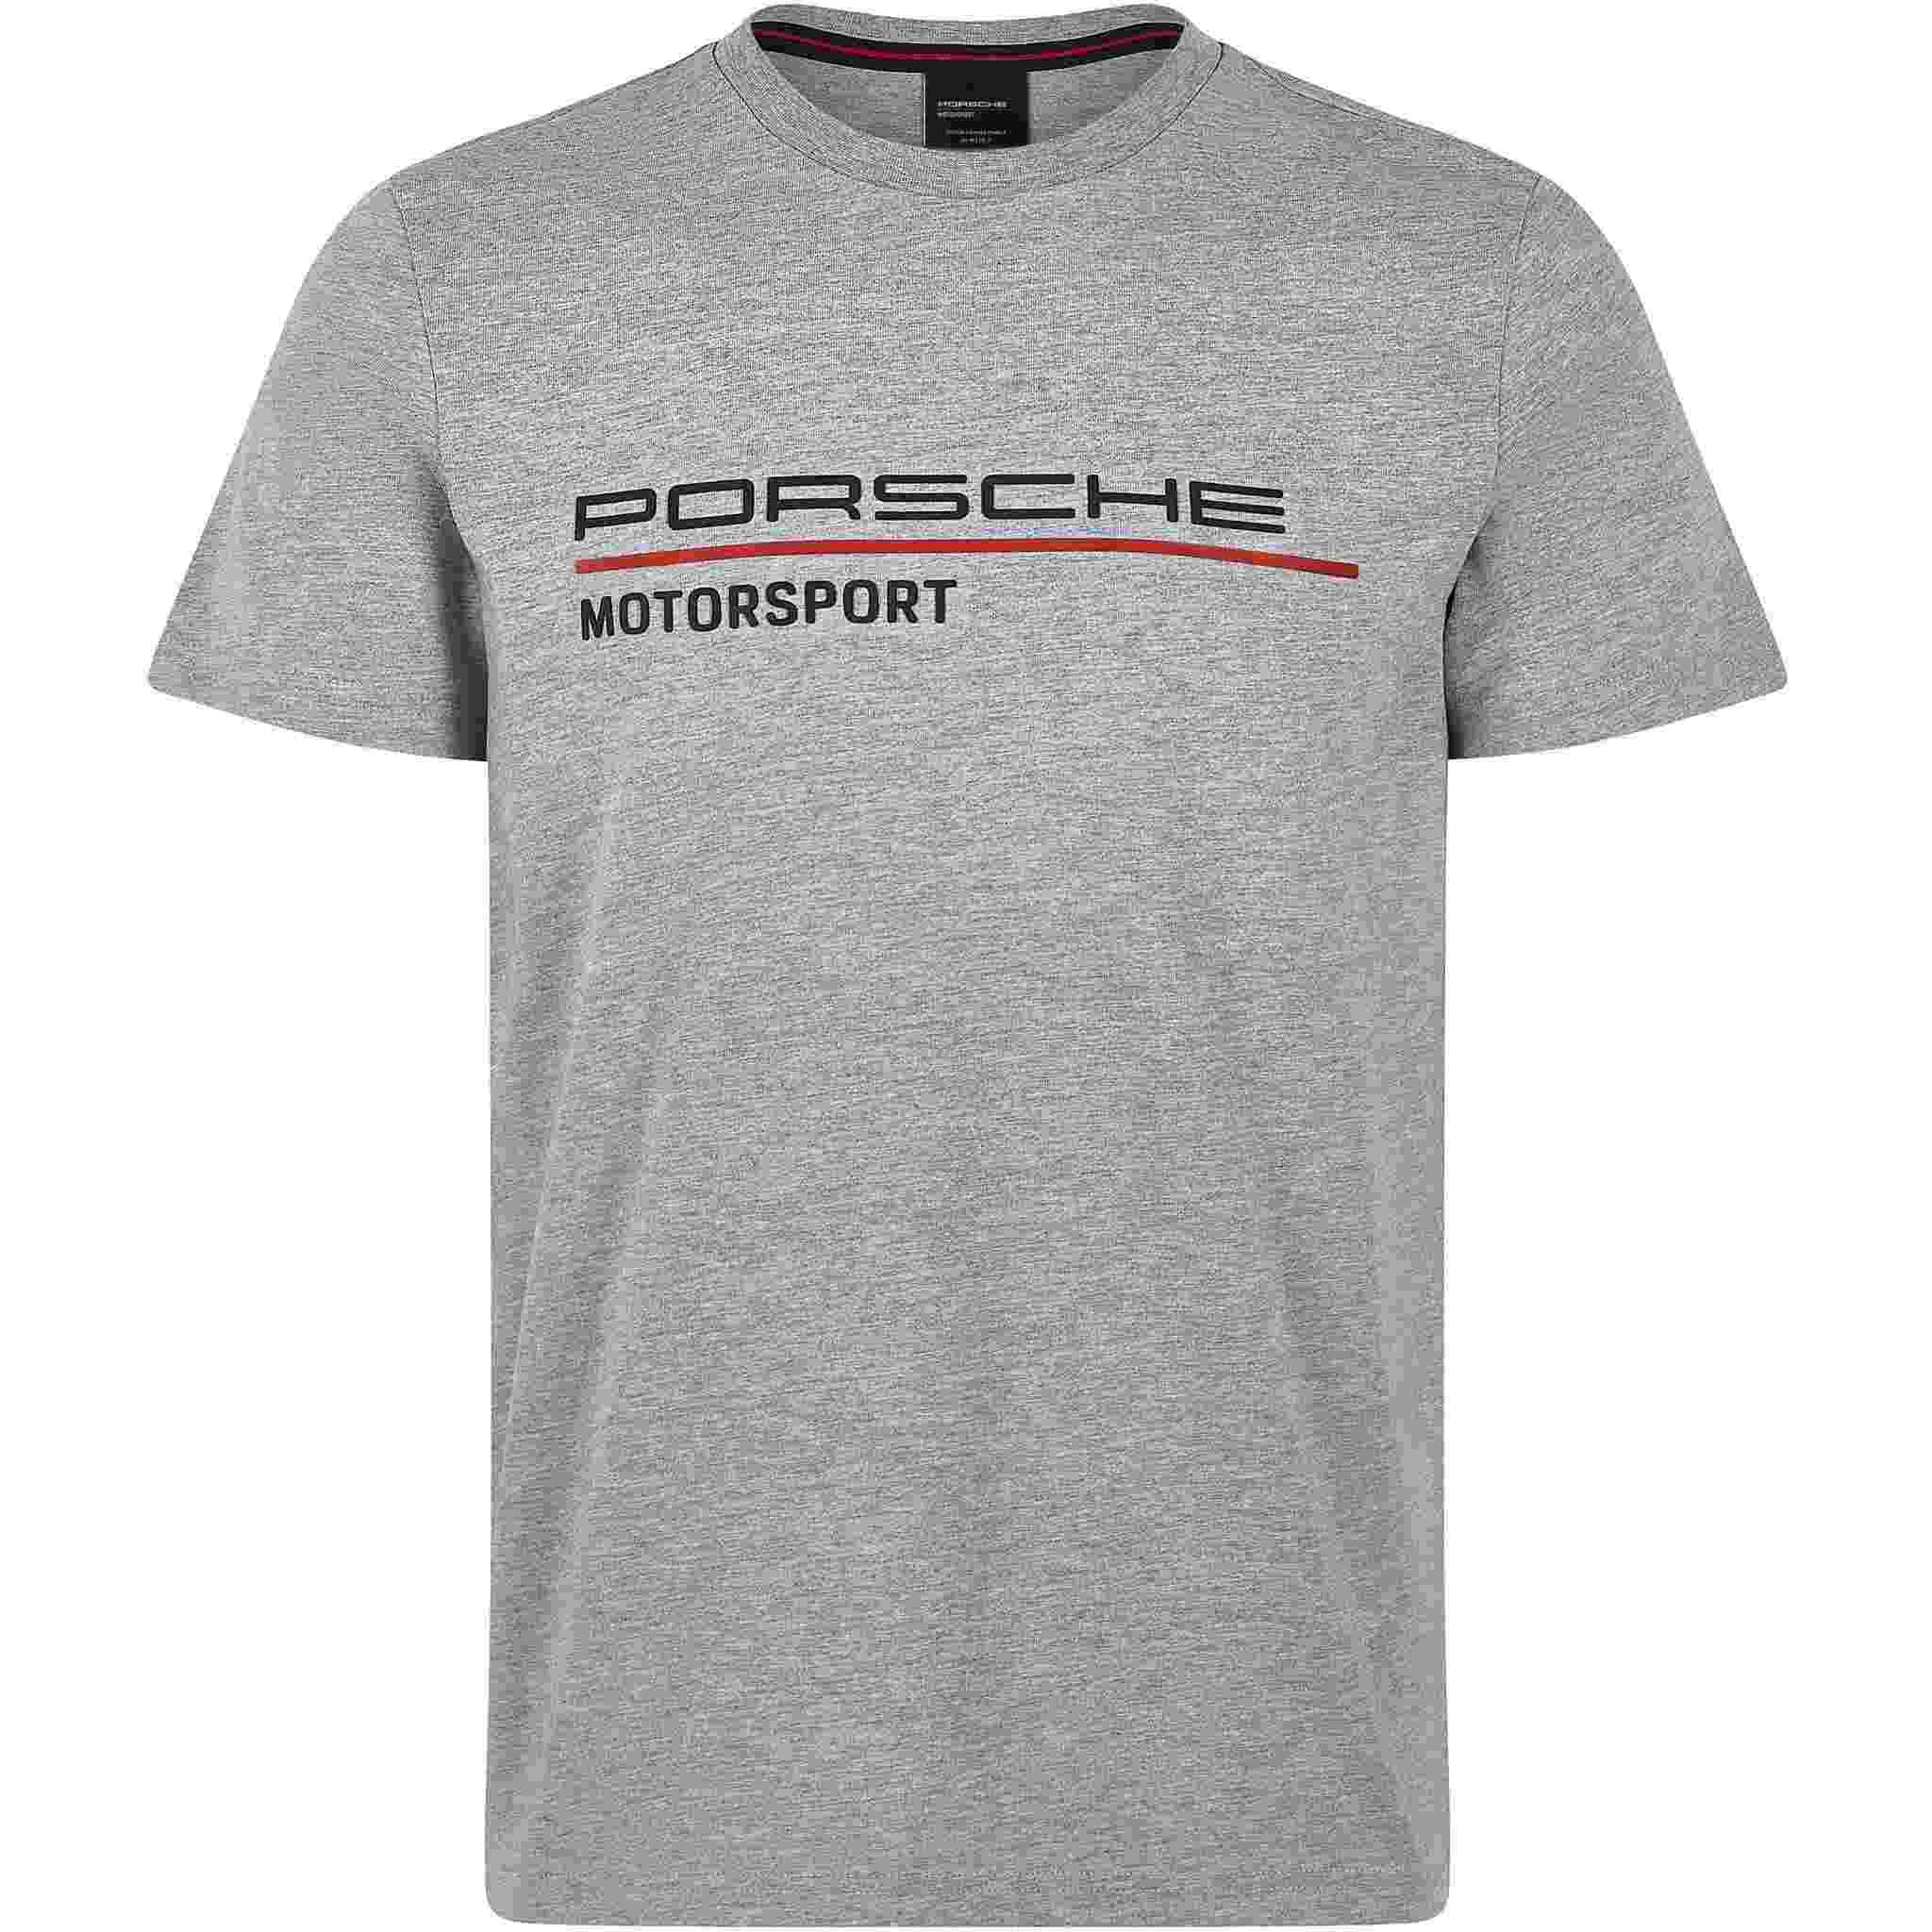 Porsche - Porsche Motorsport Men's Gray T-Shirt - Walmart.com - Walmart.com